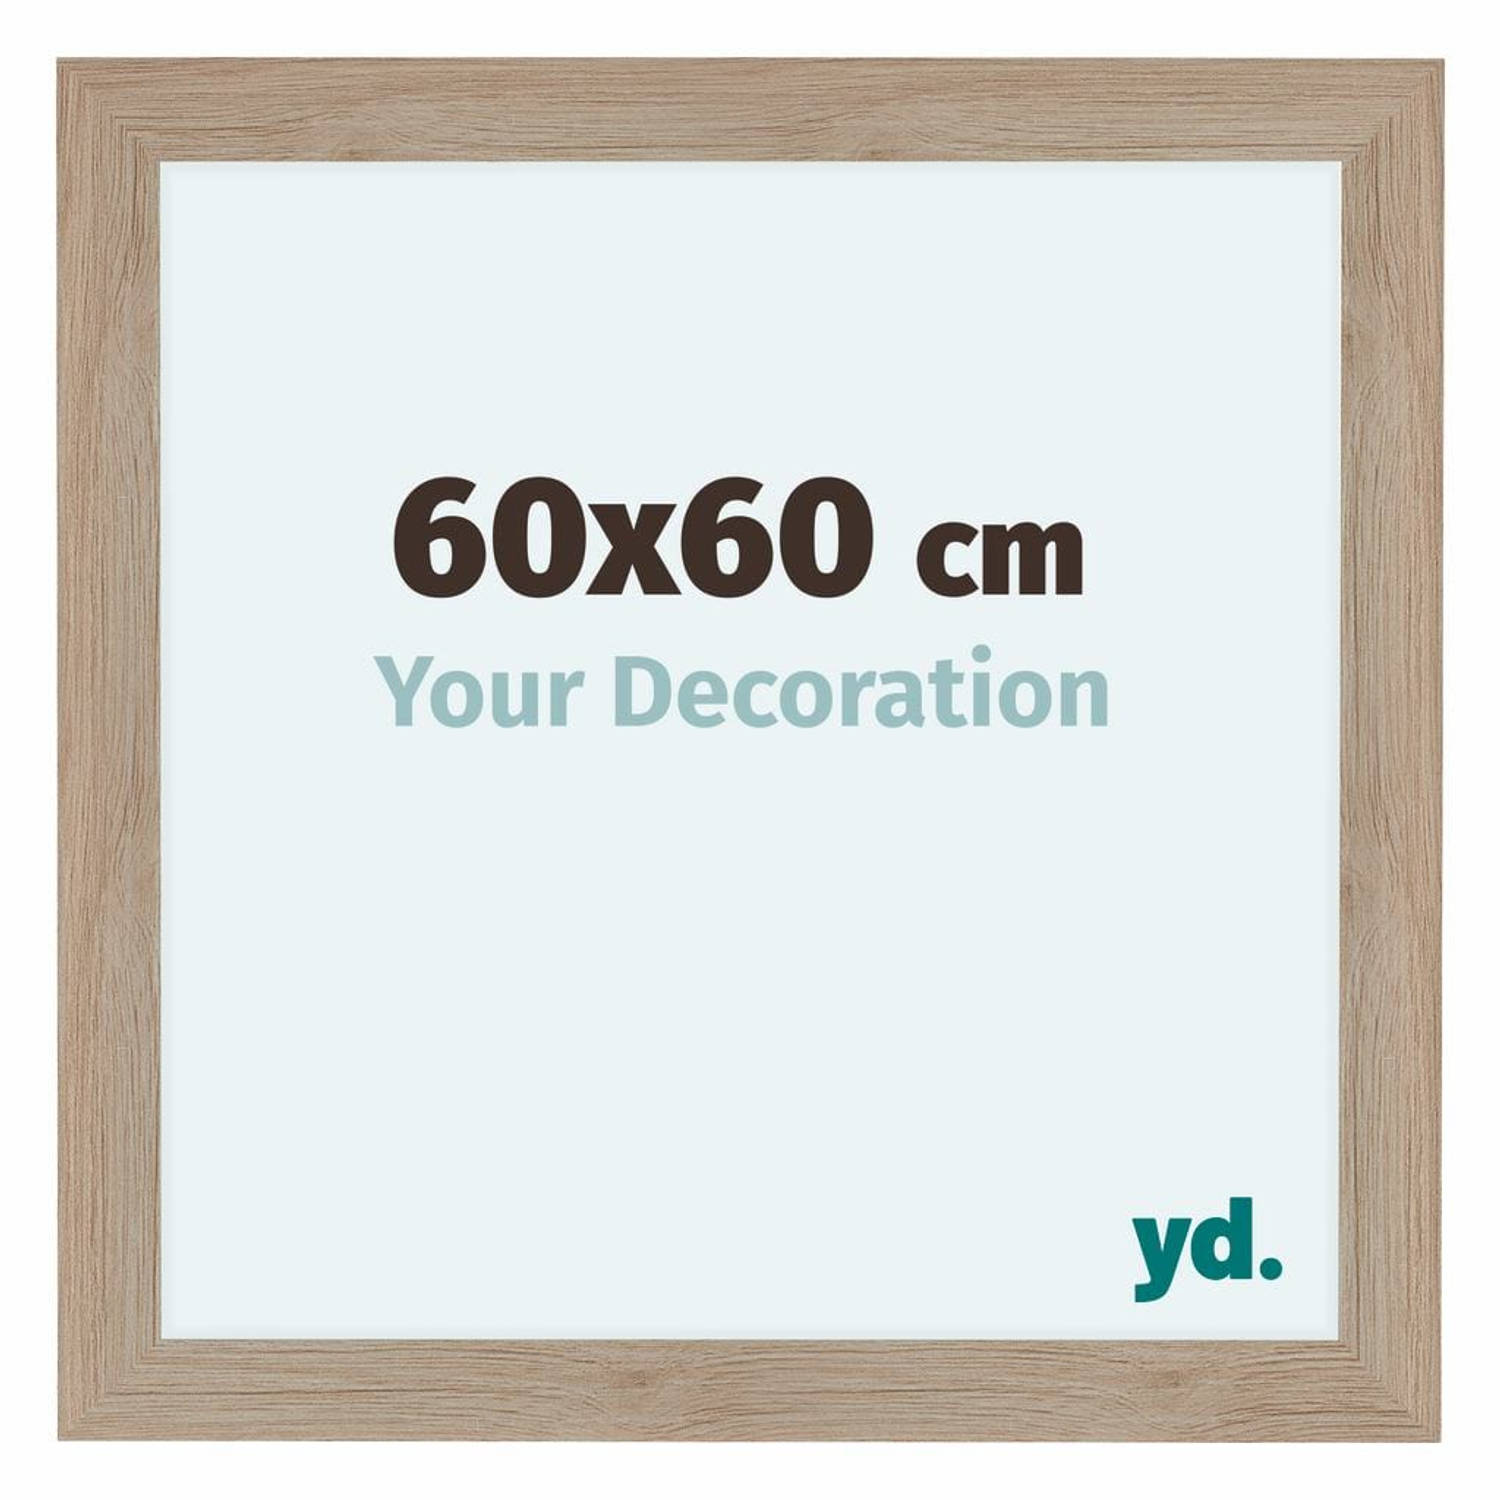 Your Decoration Como Mdf Fotolijst 60x60cm Eiken Licht - Bruin